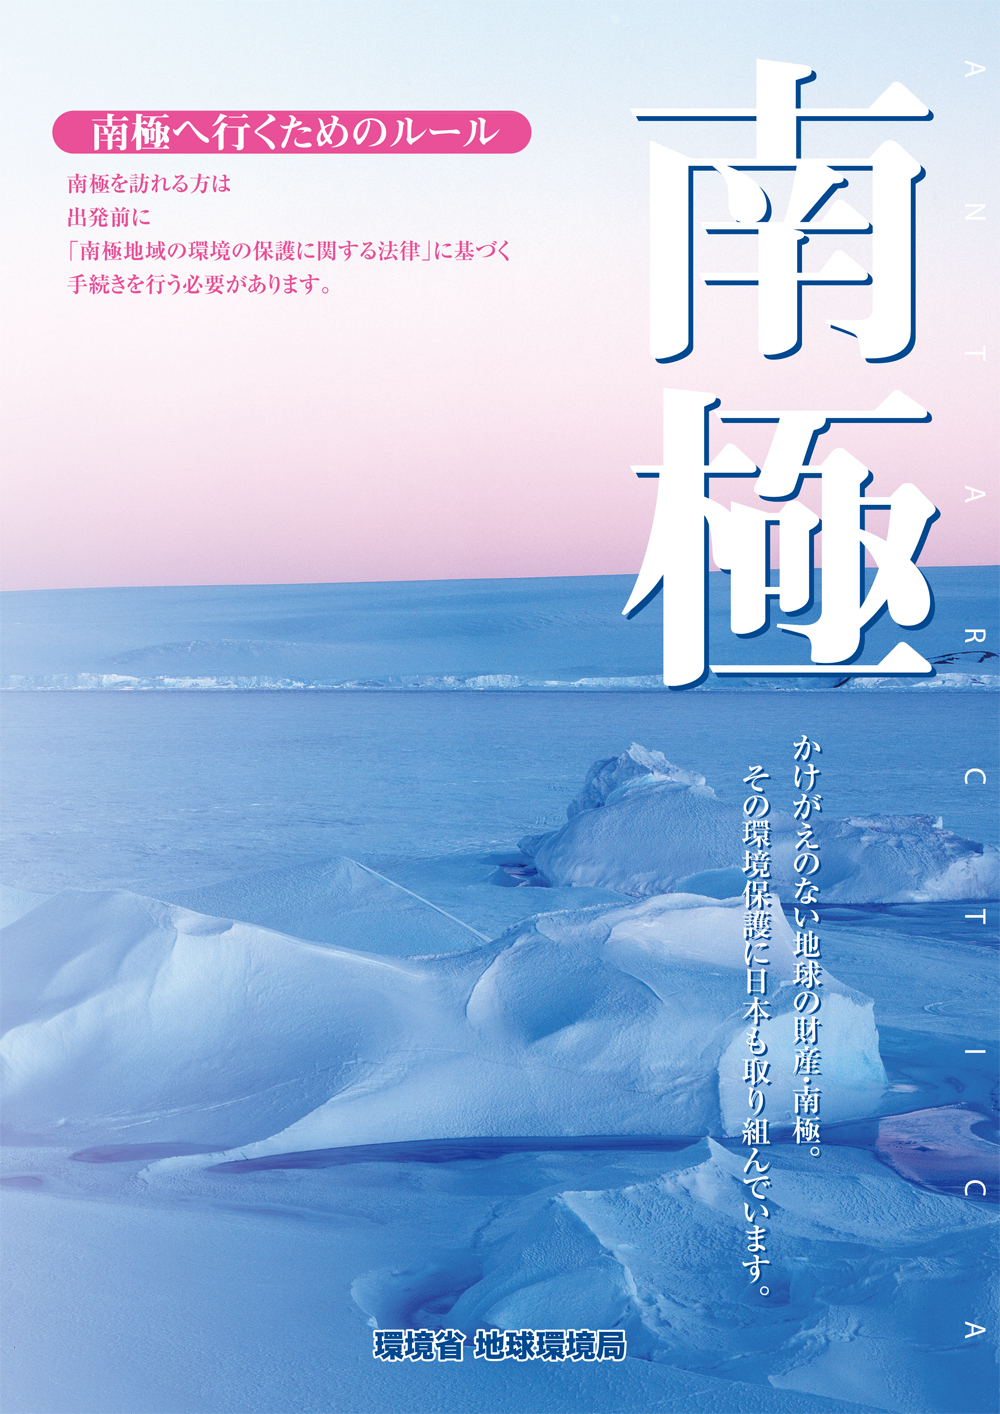 環境省「平成20年度南極地域の環境の保護に関する広報資料」（パンフレット）